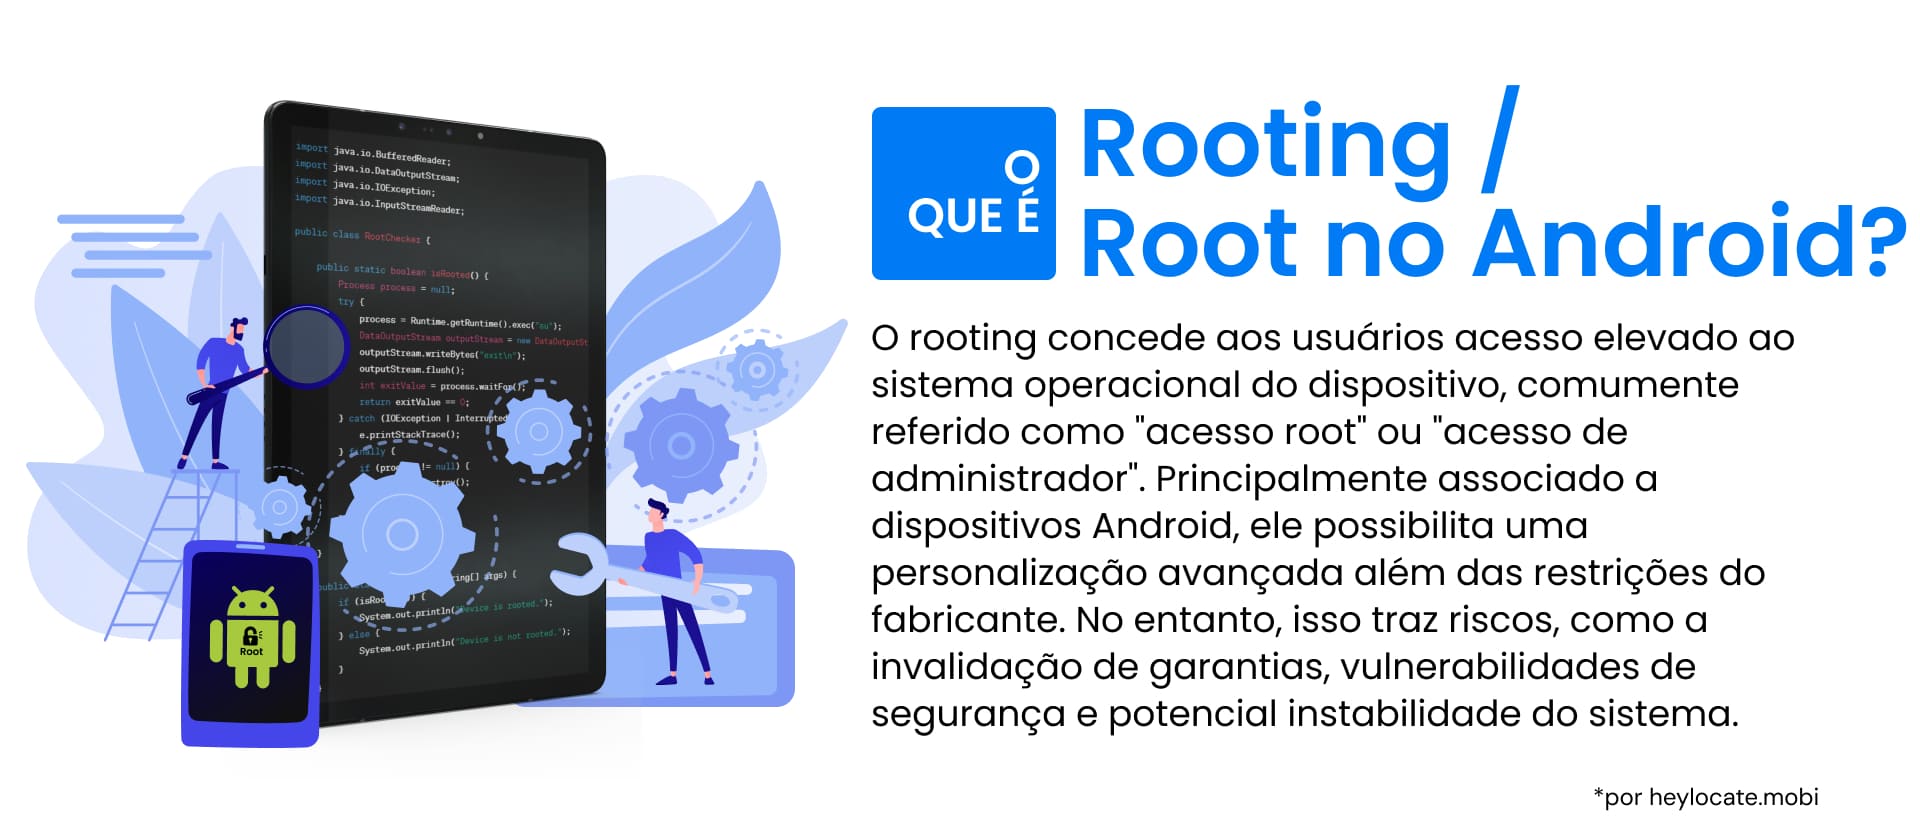 O infográfico serve como um guia para o conceito de "root" em dispositivos Android, que envolve a obtenção de controle privilegiado conhecido como "acesso root" sobre o dispositivo, permitindo uma ampla personalização além dos limites definidos pelo fabricante.